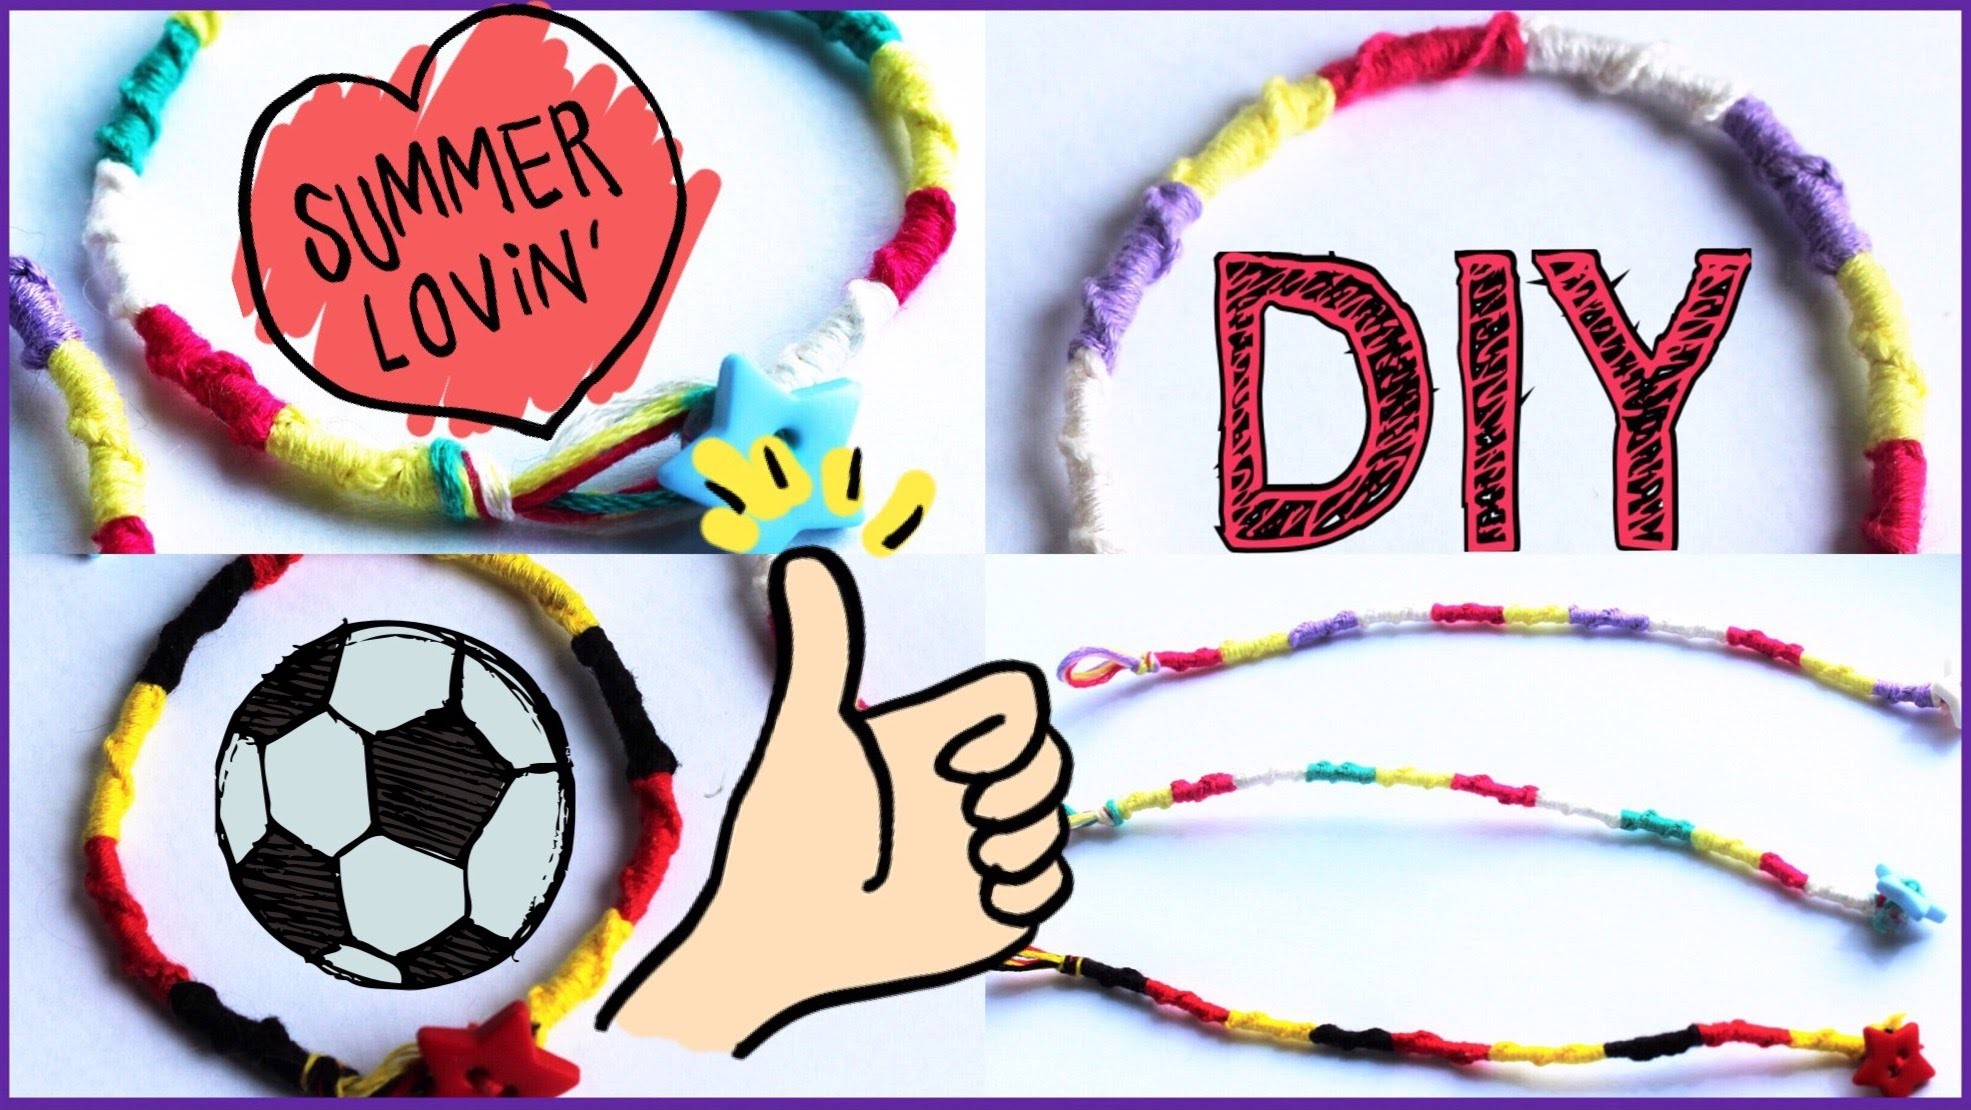 Sommer DIY ❣ Freundschaftsbänder❣Spiral-Armbänder knüpfen ♥schnell&einfach♥